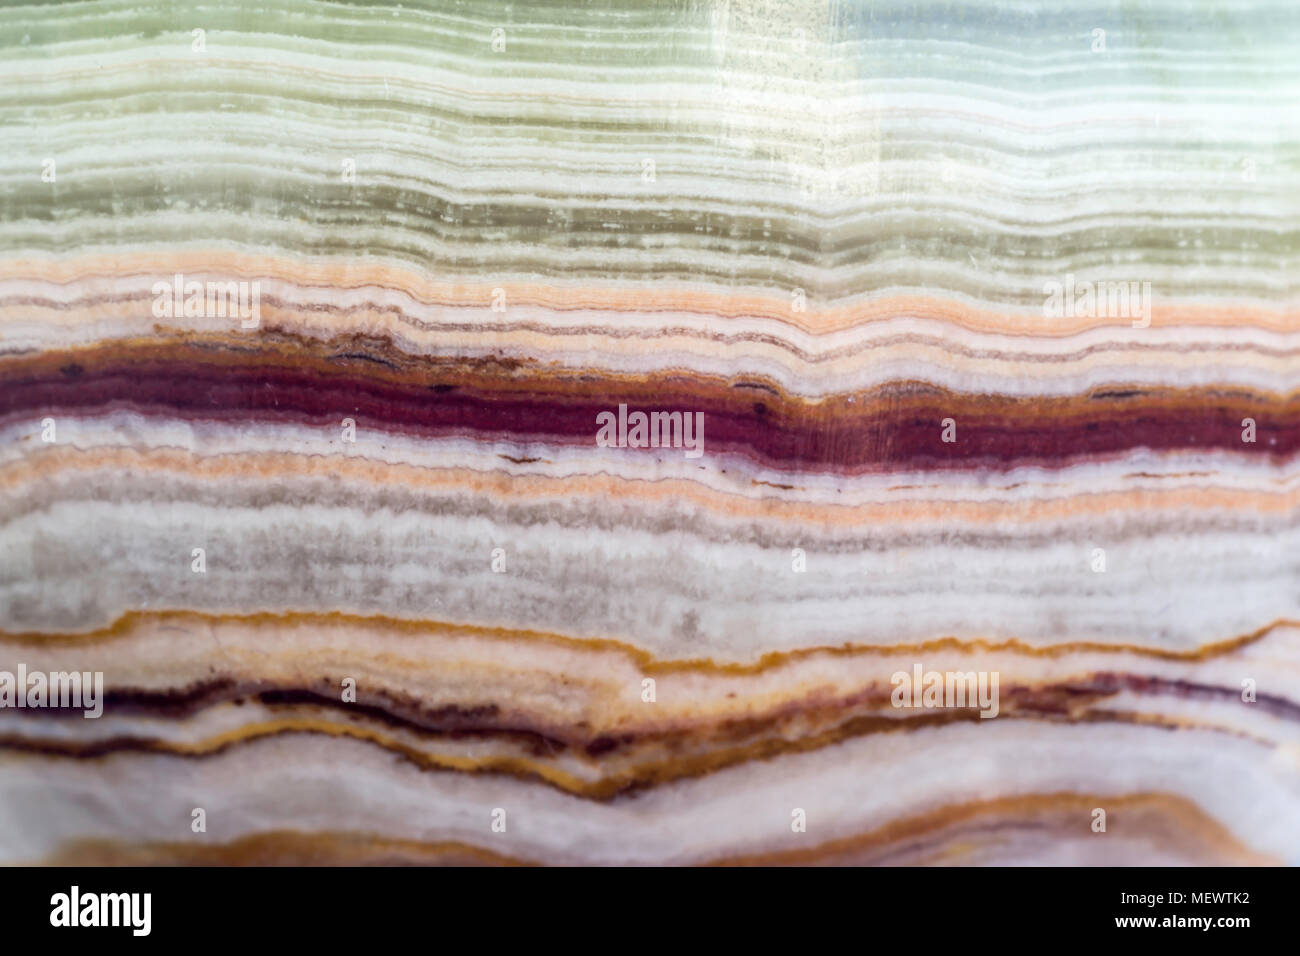 Makro Foto Textur aus poliertem onyx Stein. Fotos für die Website über Geologie, Steine, Schmuck, Handarbeit, Texturen, Art. Stockfoto